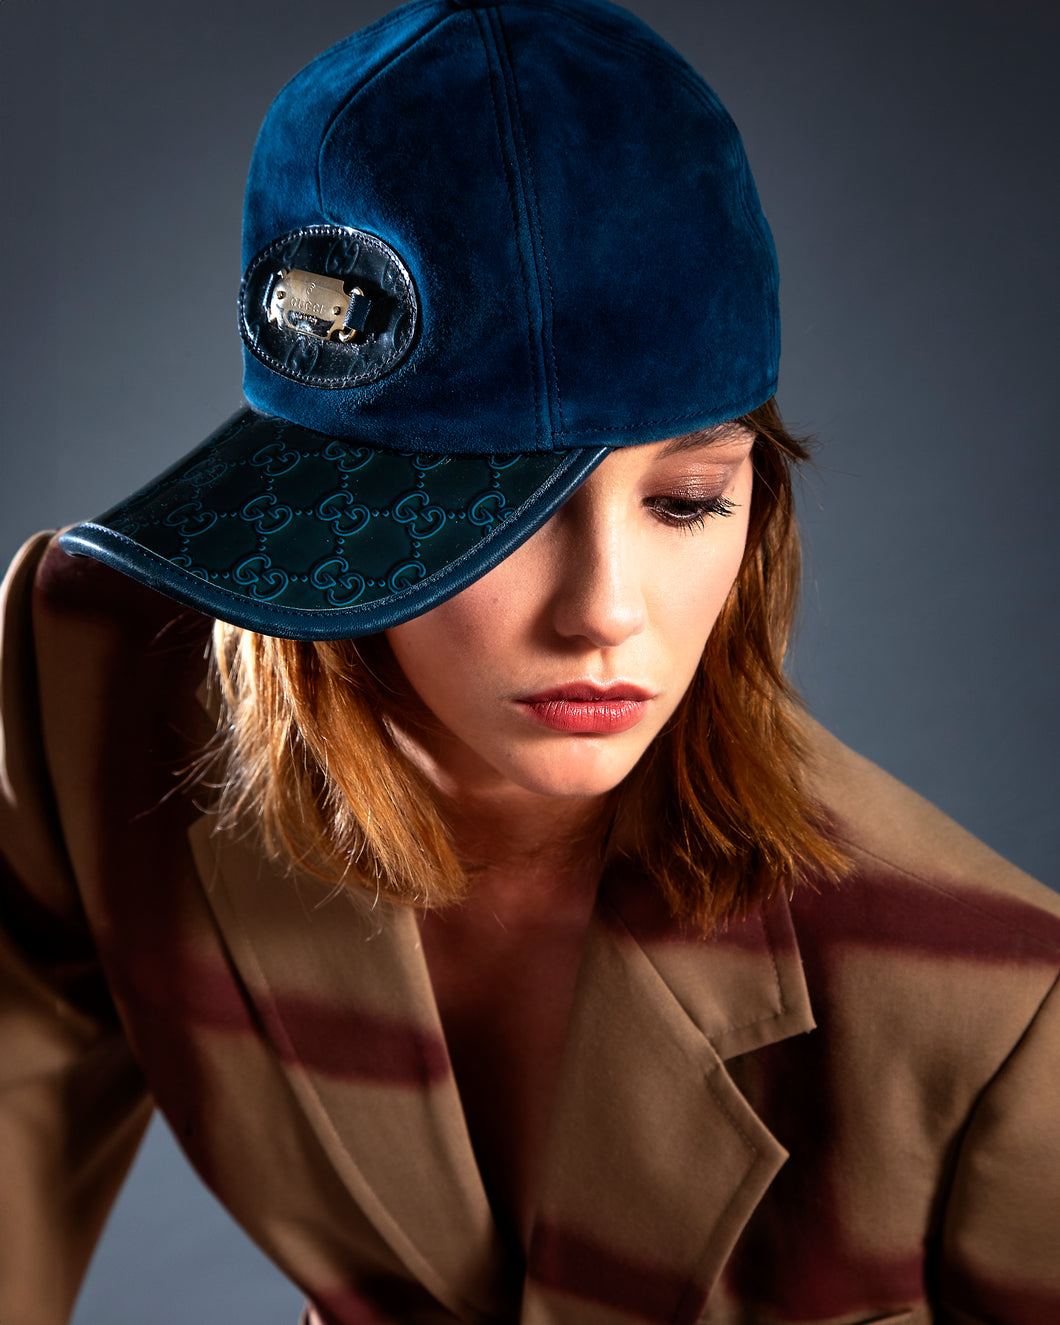 Gucci cappello suede blu